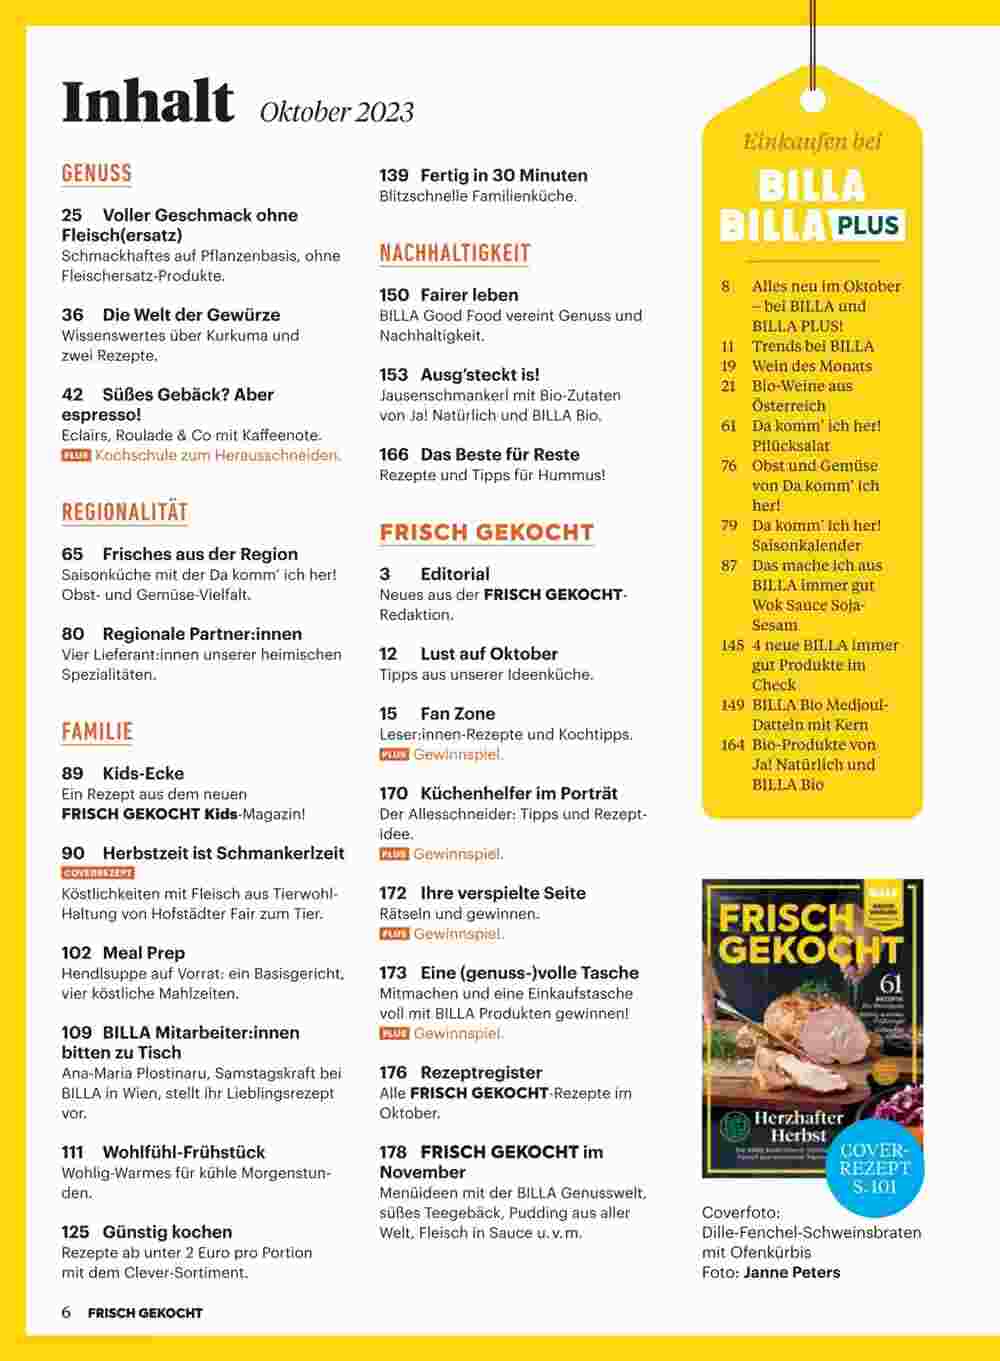 Billa Box Flugblatt (ab 01.10.2023) - Angebote und Prospekt - Seite 2